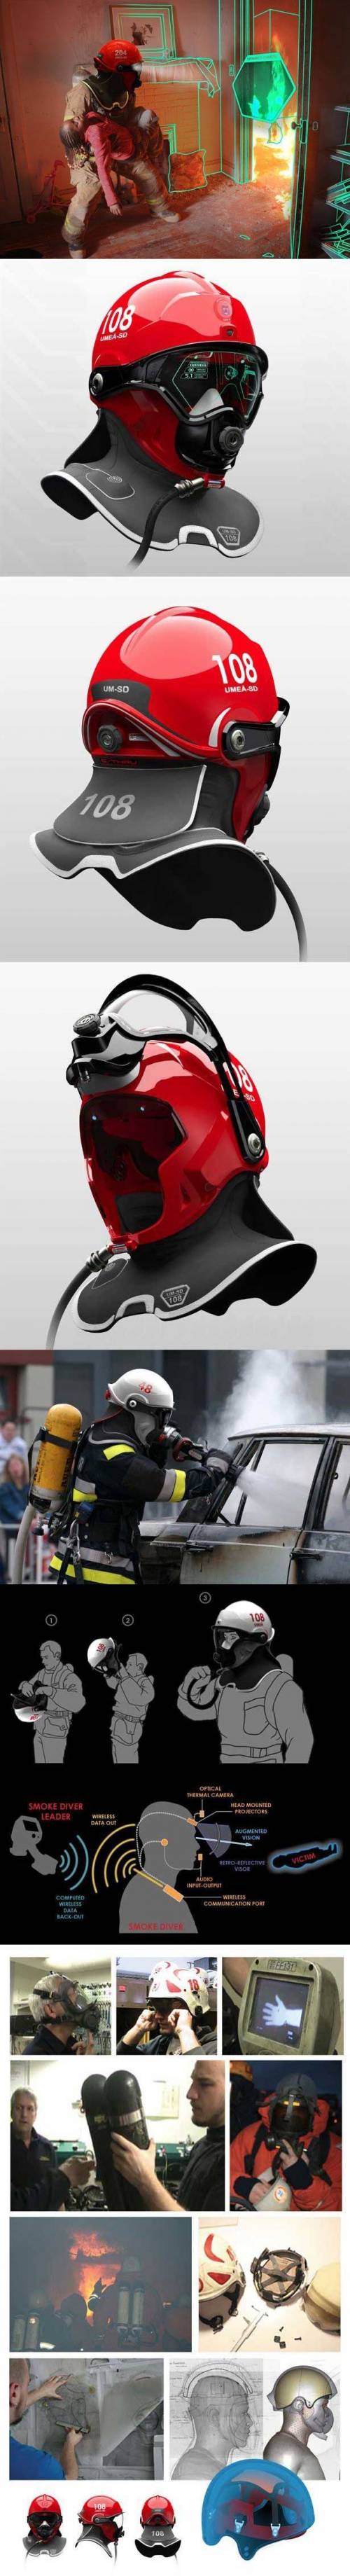 소방관 용 풀페이스 헬멧.jpg